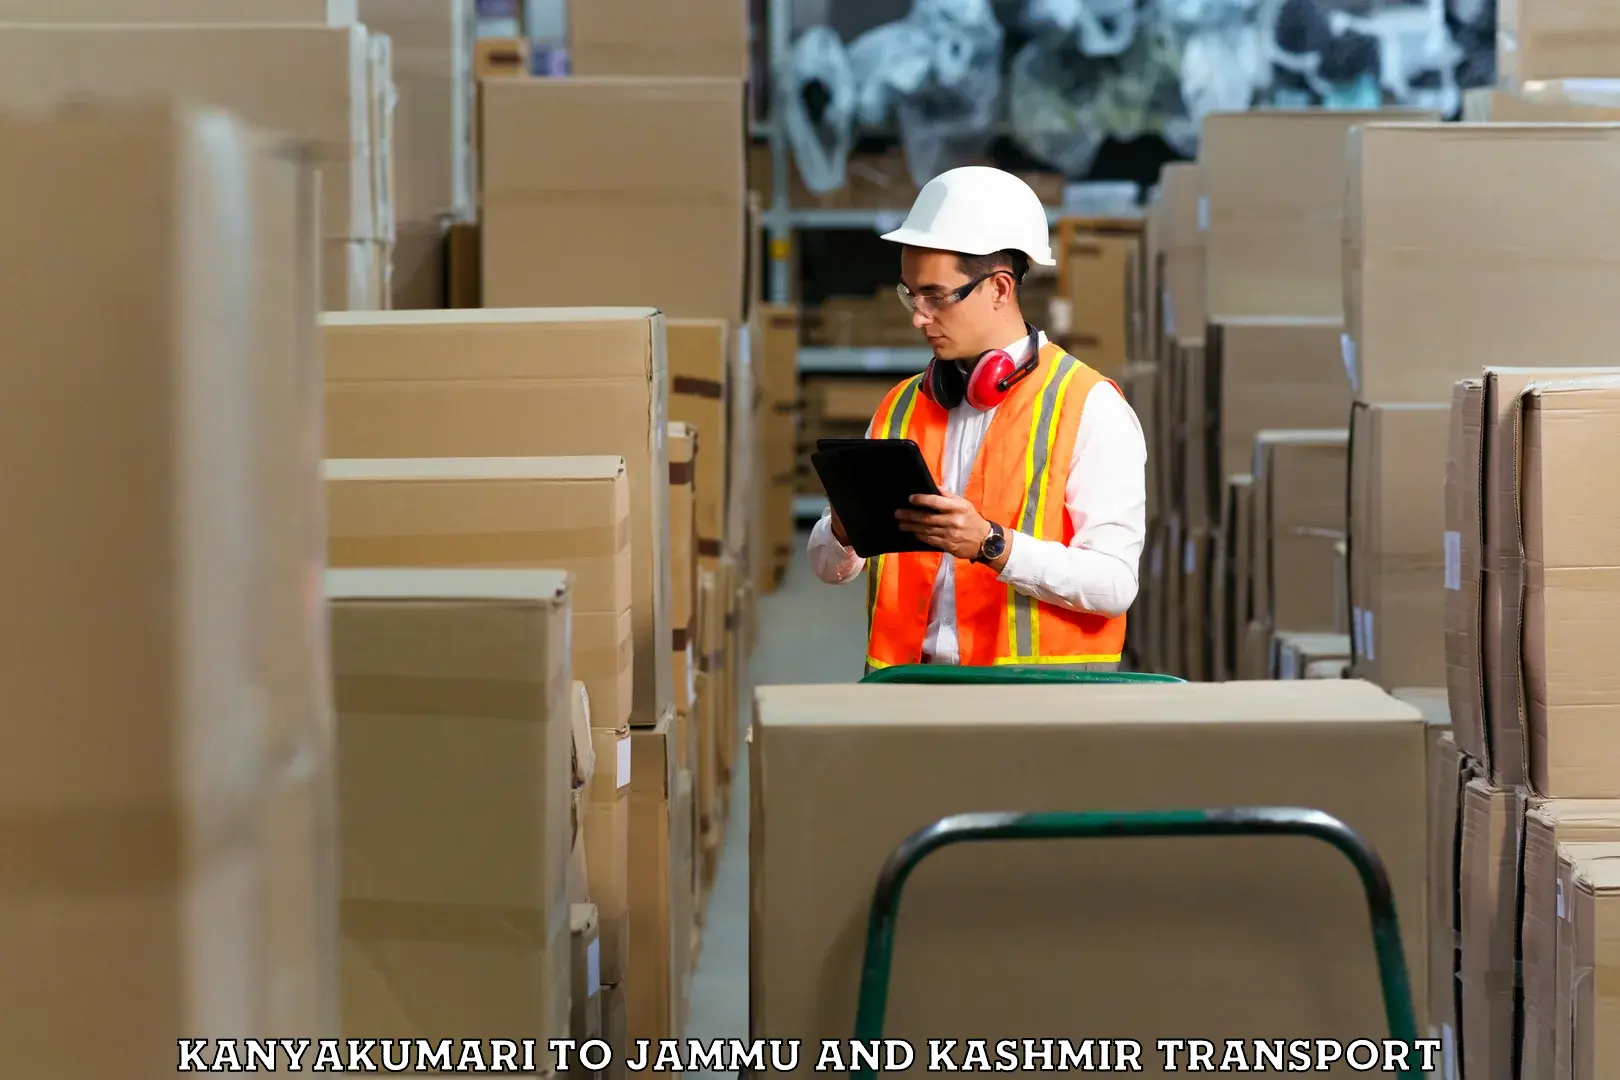 Container transportation services Kanyakumari to Jammu and Kashmir